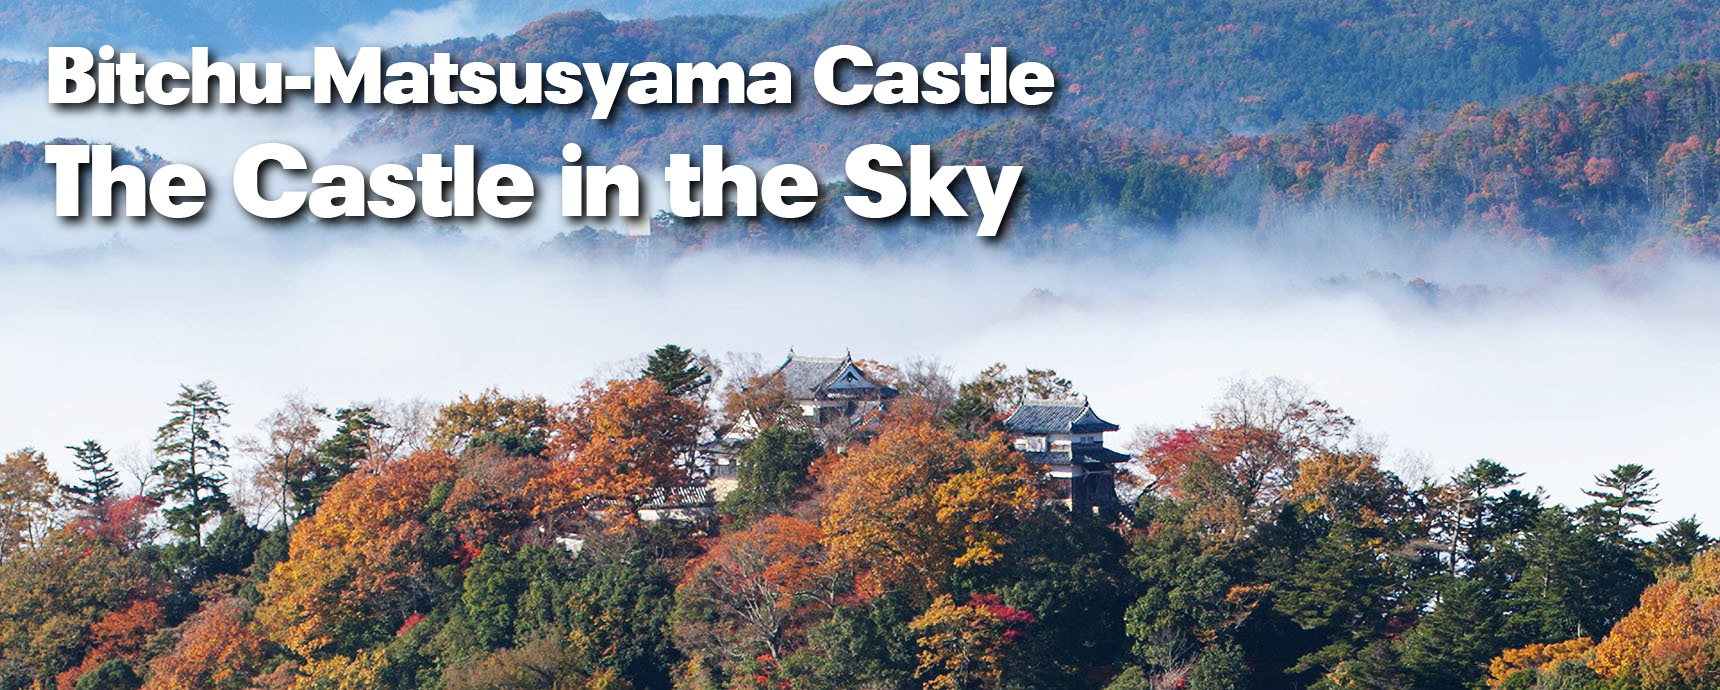 Bitchu-

matsuyama Castle